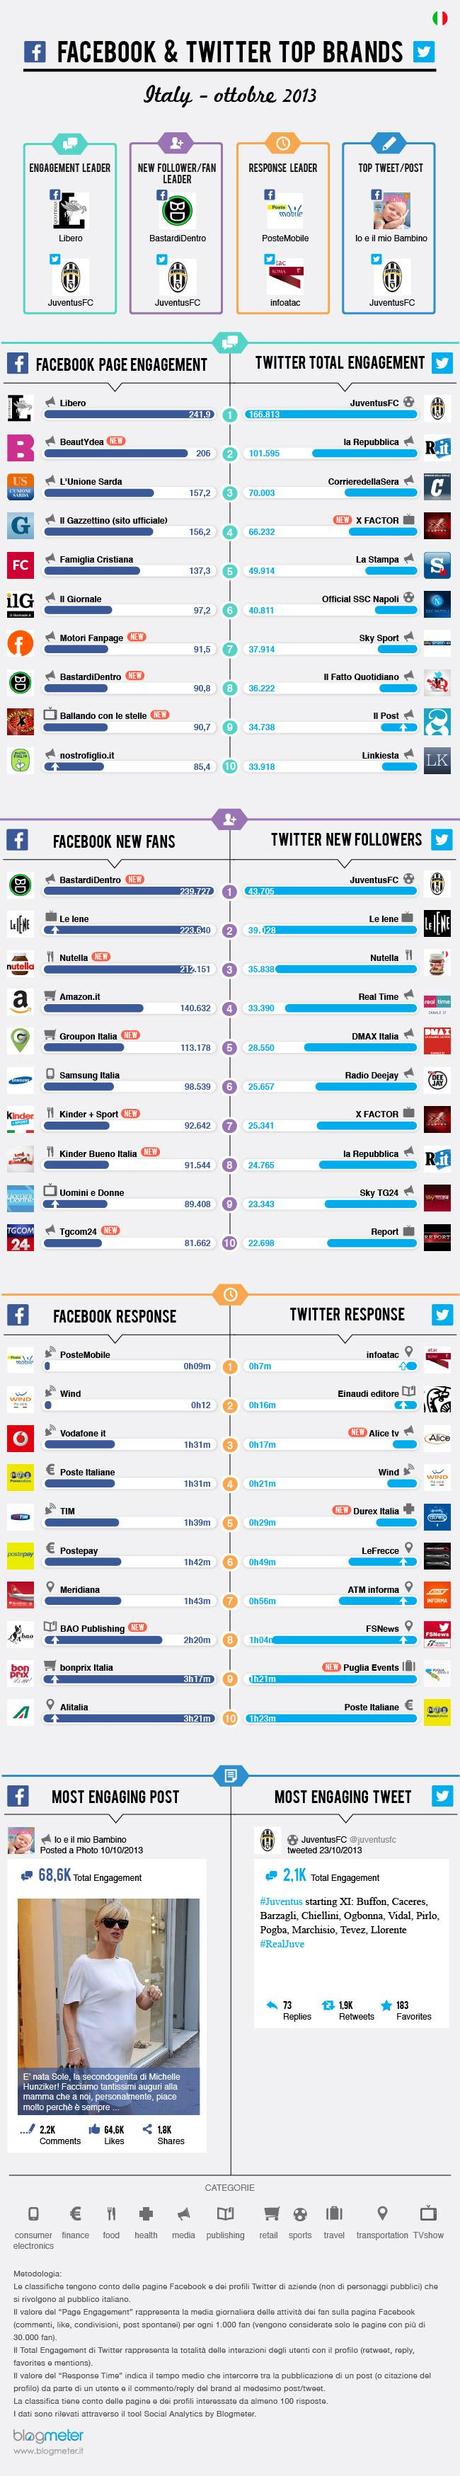 Ecco i 10 migliori brand su Facebook e Twitter ad Ottobre 2013